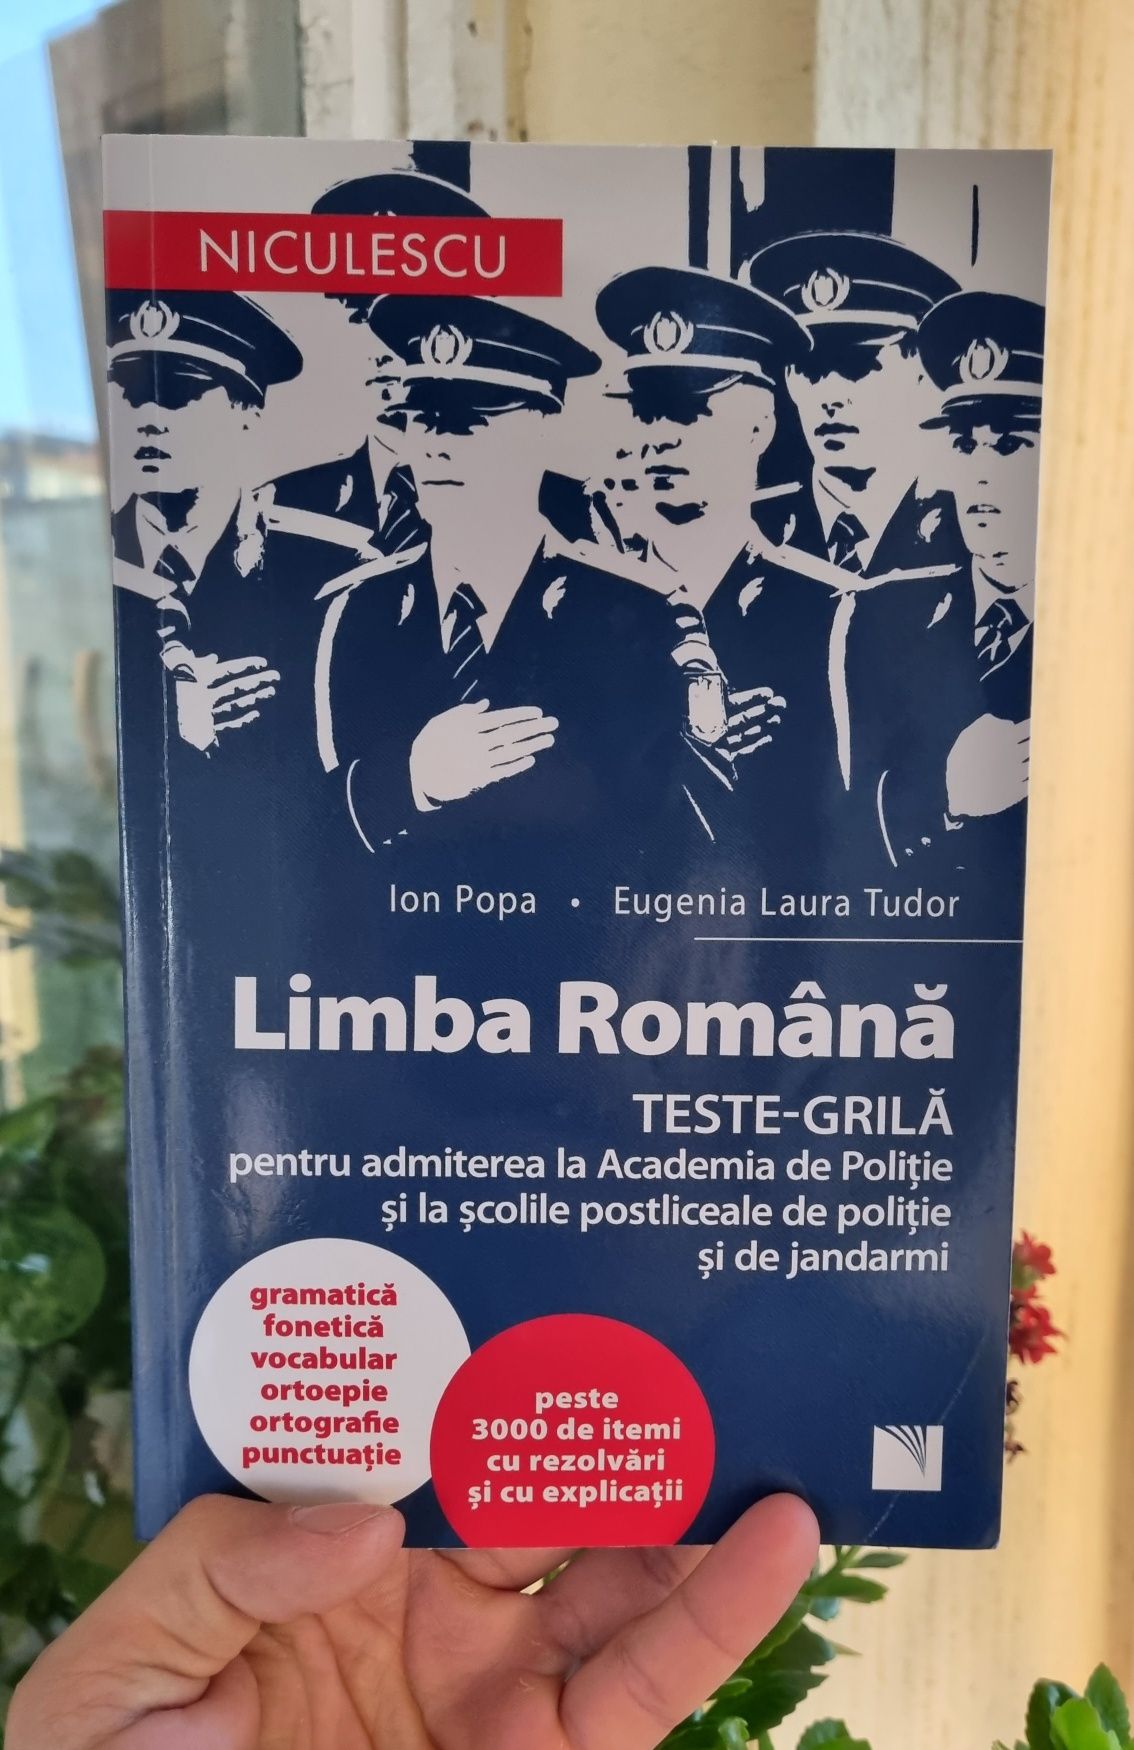 Culegere limba română, teste grilă pentru admiterea la poliție.